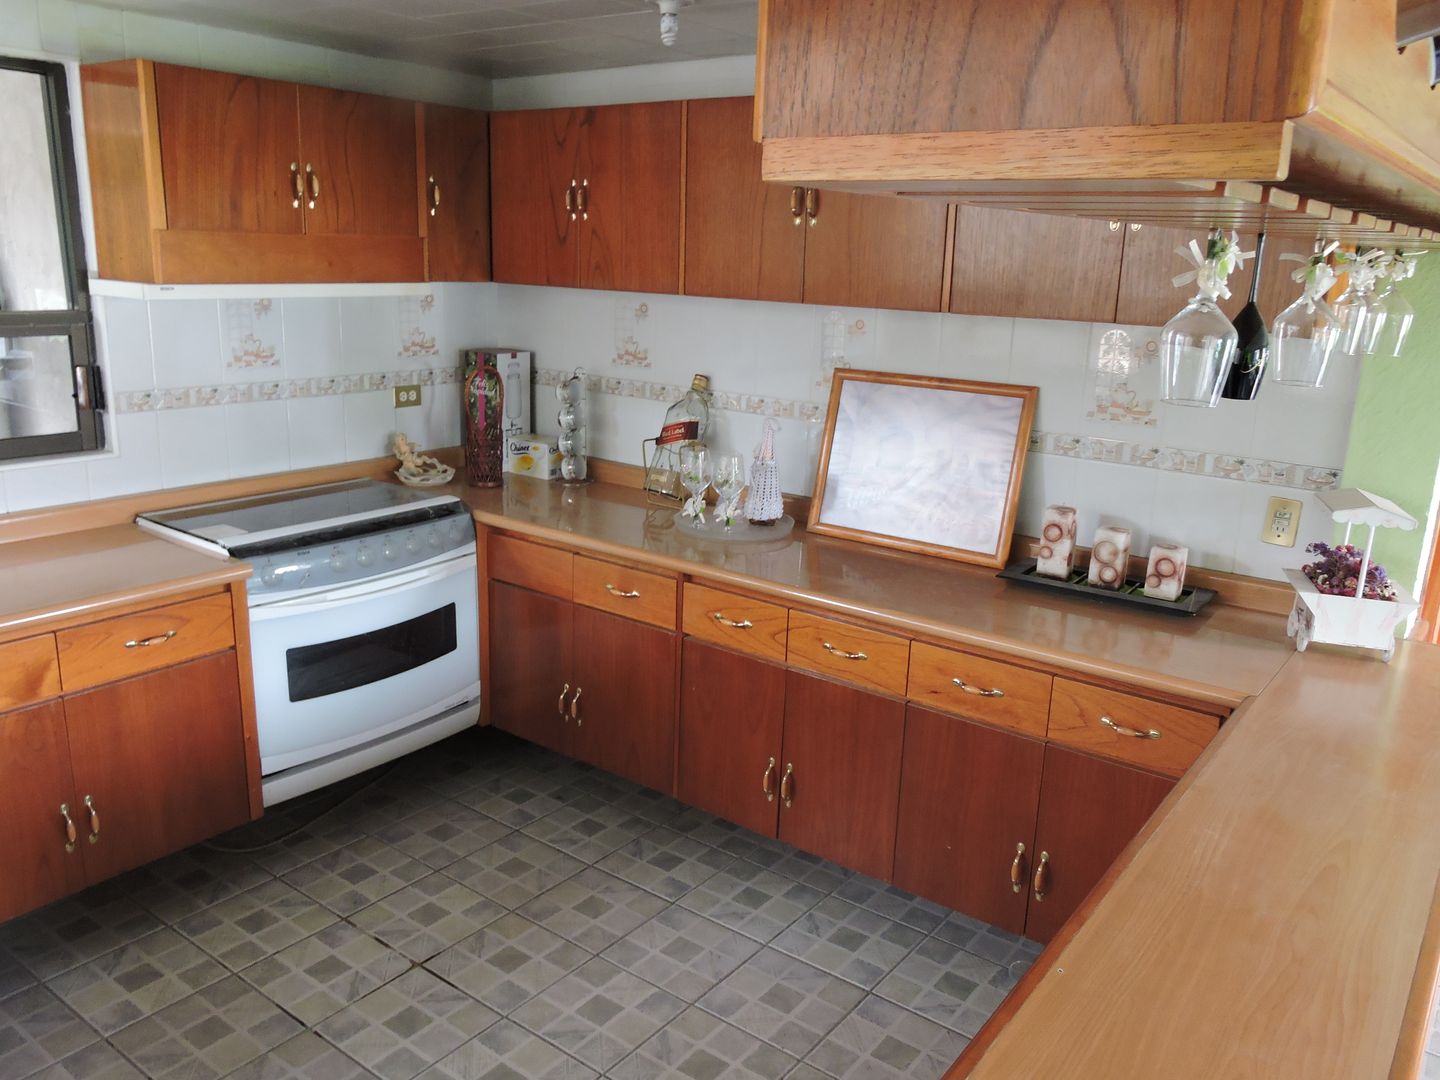 Barra, Cantina y Puertas de cocina en madera., La Casa del Diseño La Casa del Diseño Cozinhas modernas Madeira Efeito de madeira